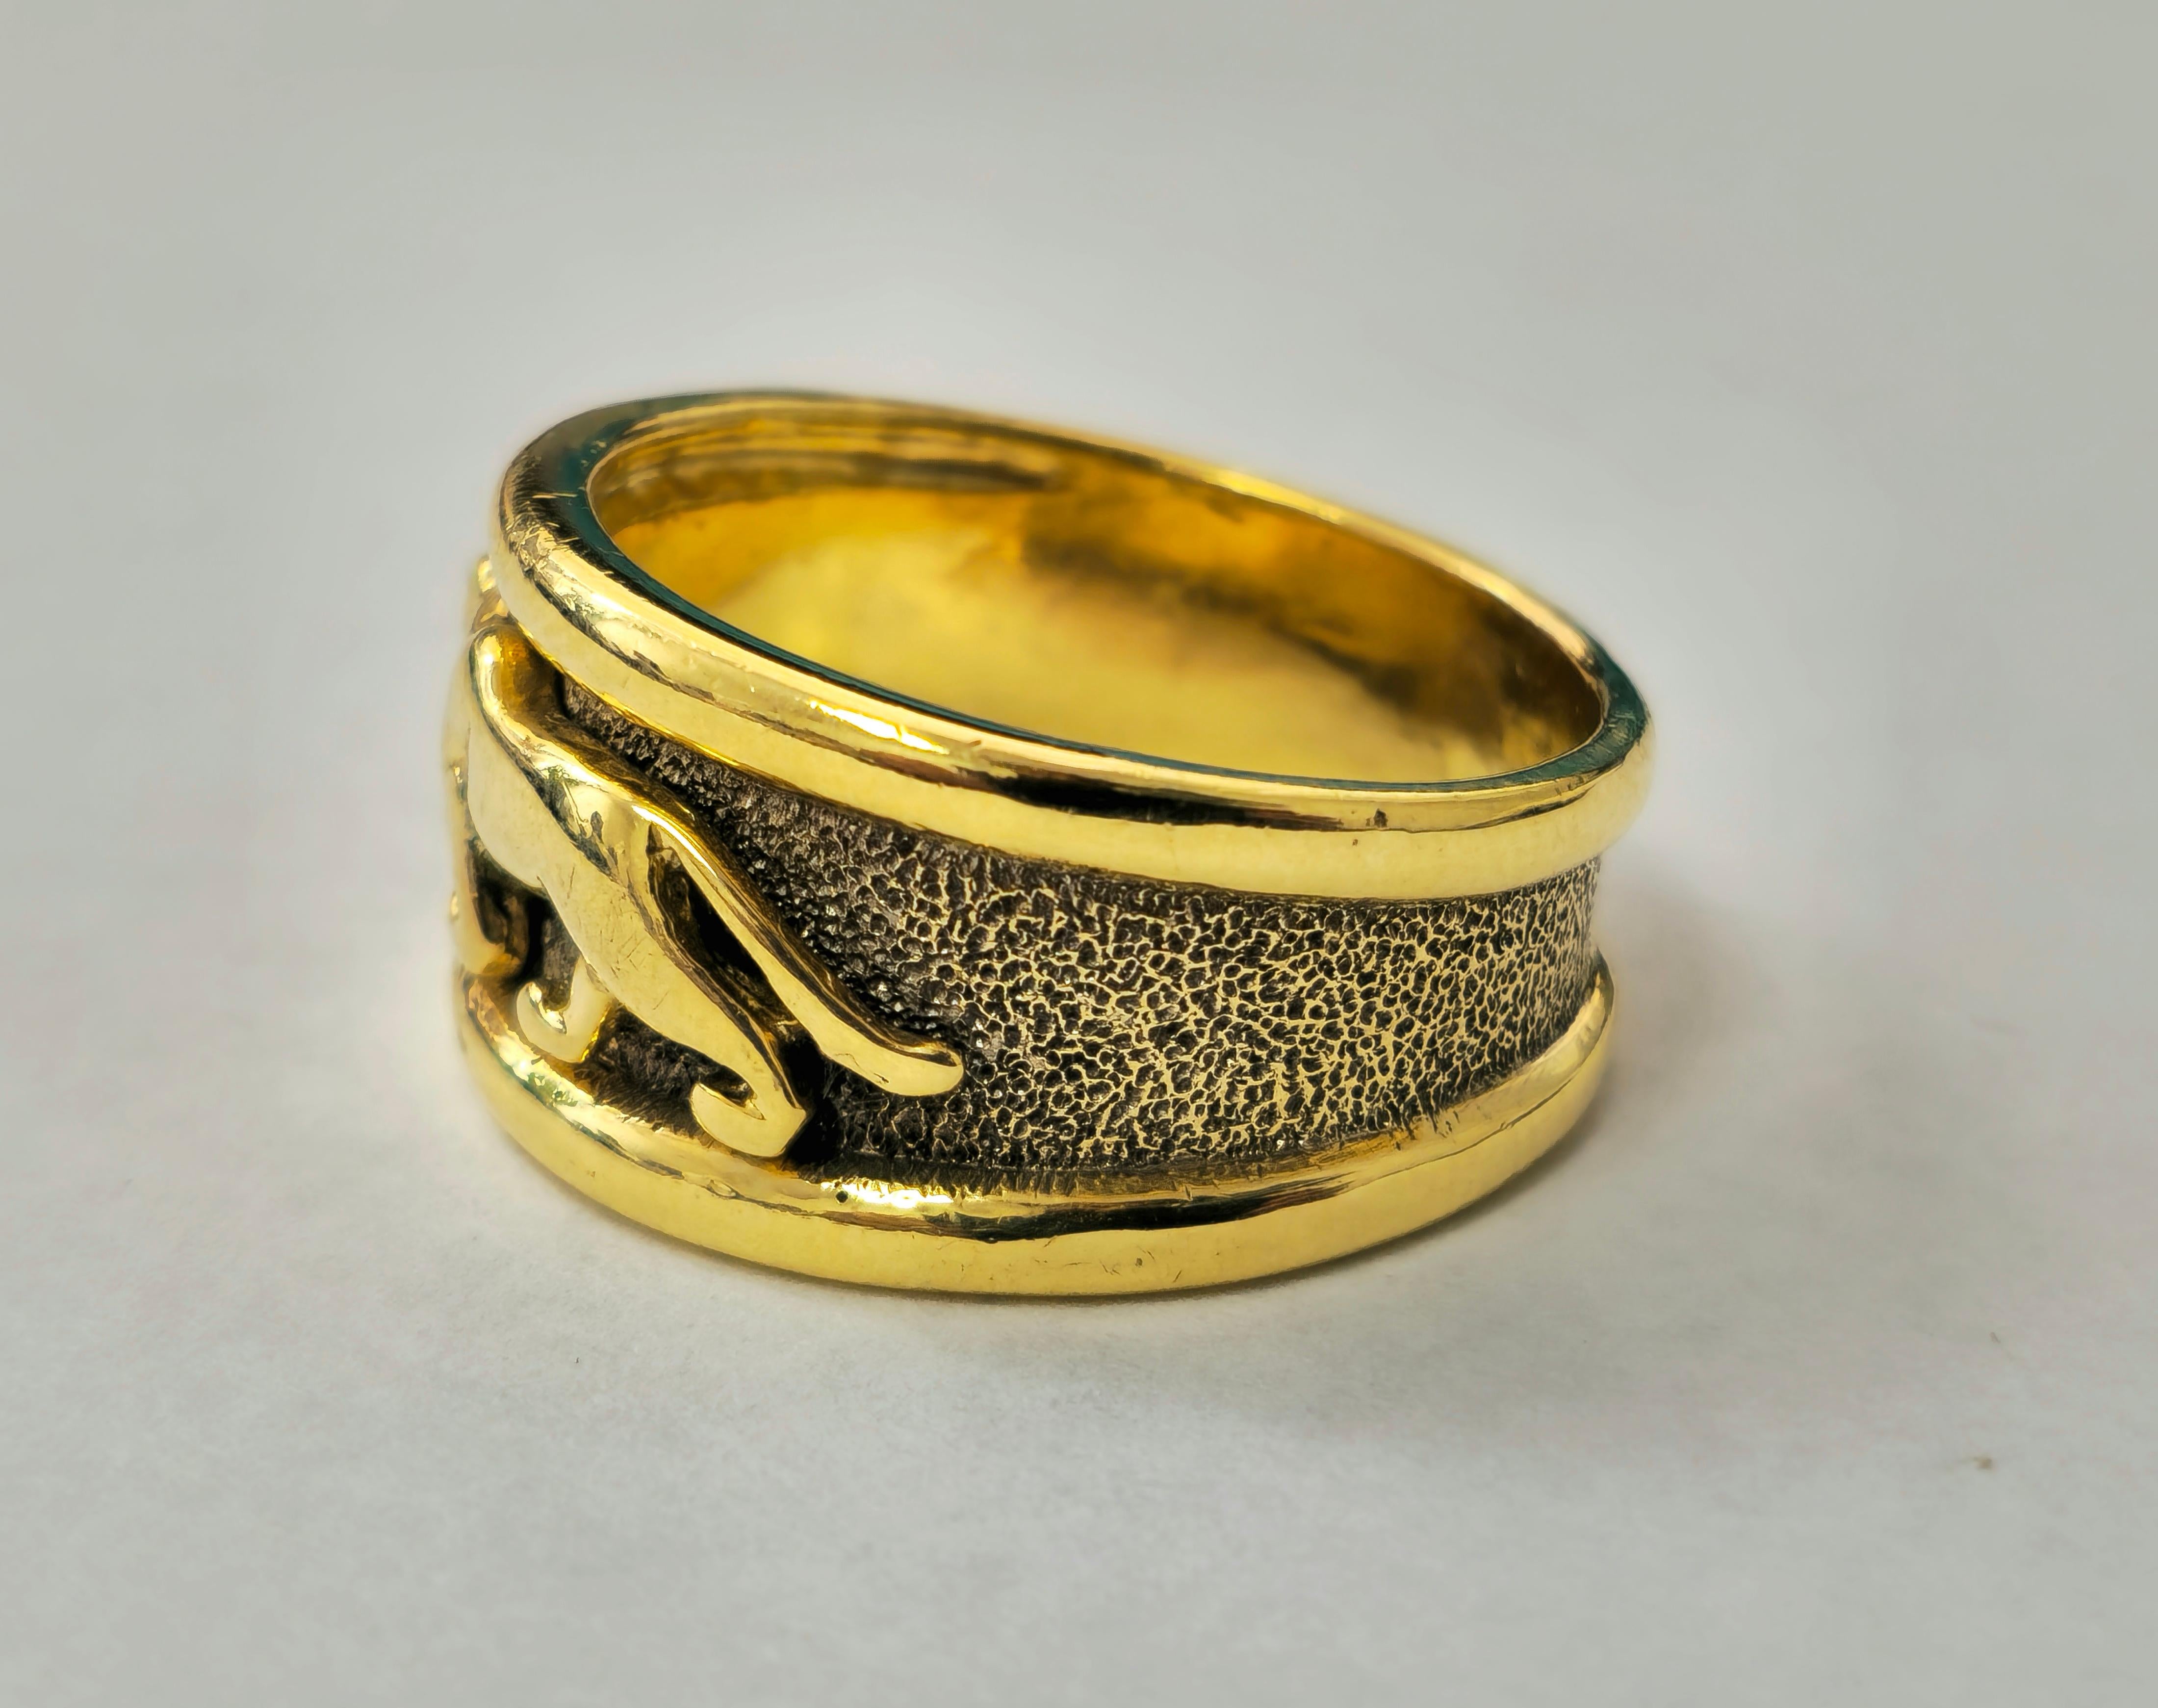 Dieser Vintage-Ring aus 14-karätigem Gelbgold mit einem Gewicht von 9,50 Gramm besticht durch sein unverwechselbares Panthermotiv, das zeitlose Eleganz und Stil ausstrahlt. Mit ihrem vielseitigen Unisex-Design bietet sie eine perfekte Passform für